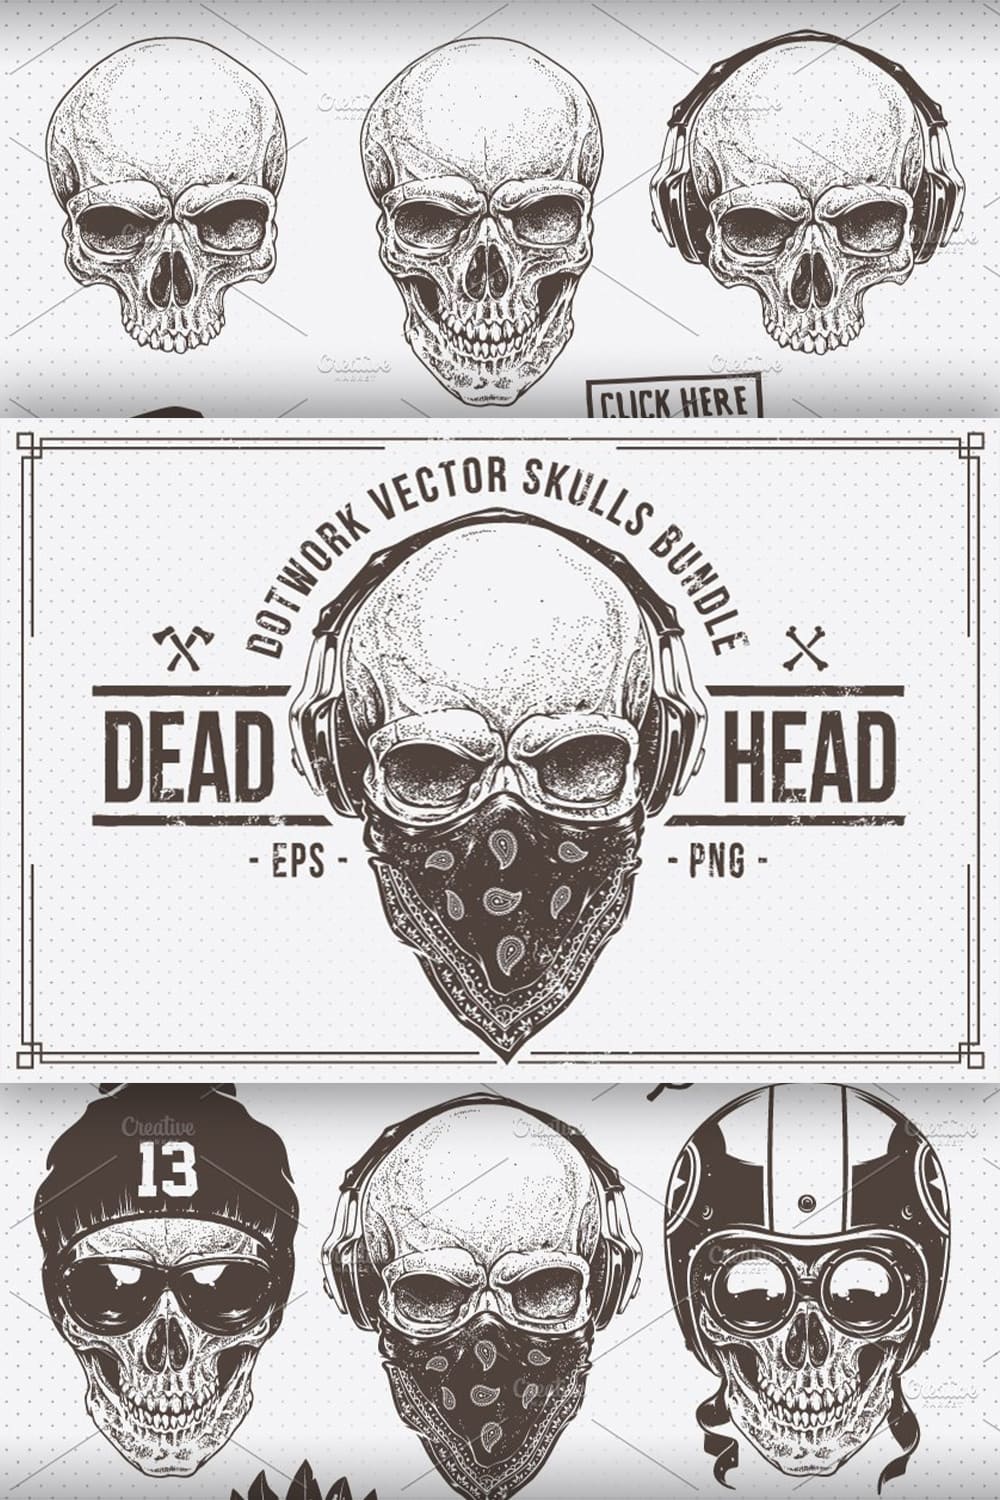 Dead Head | Vector Skulls Bundle pinterest image.